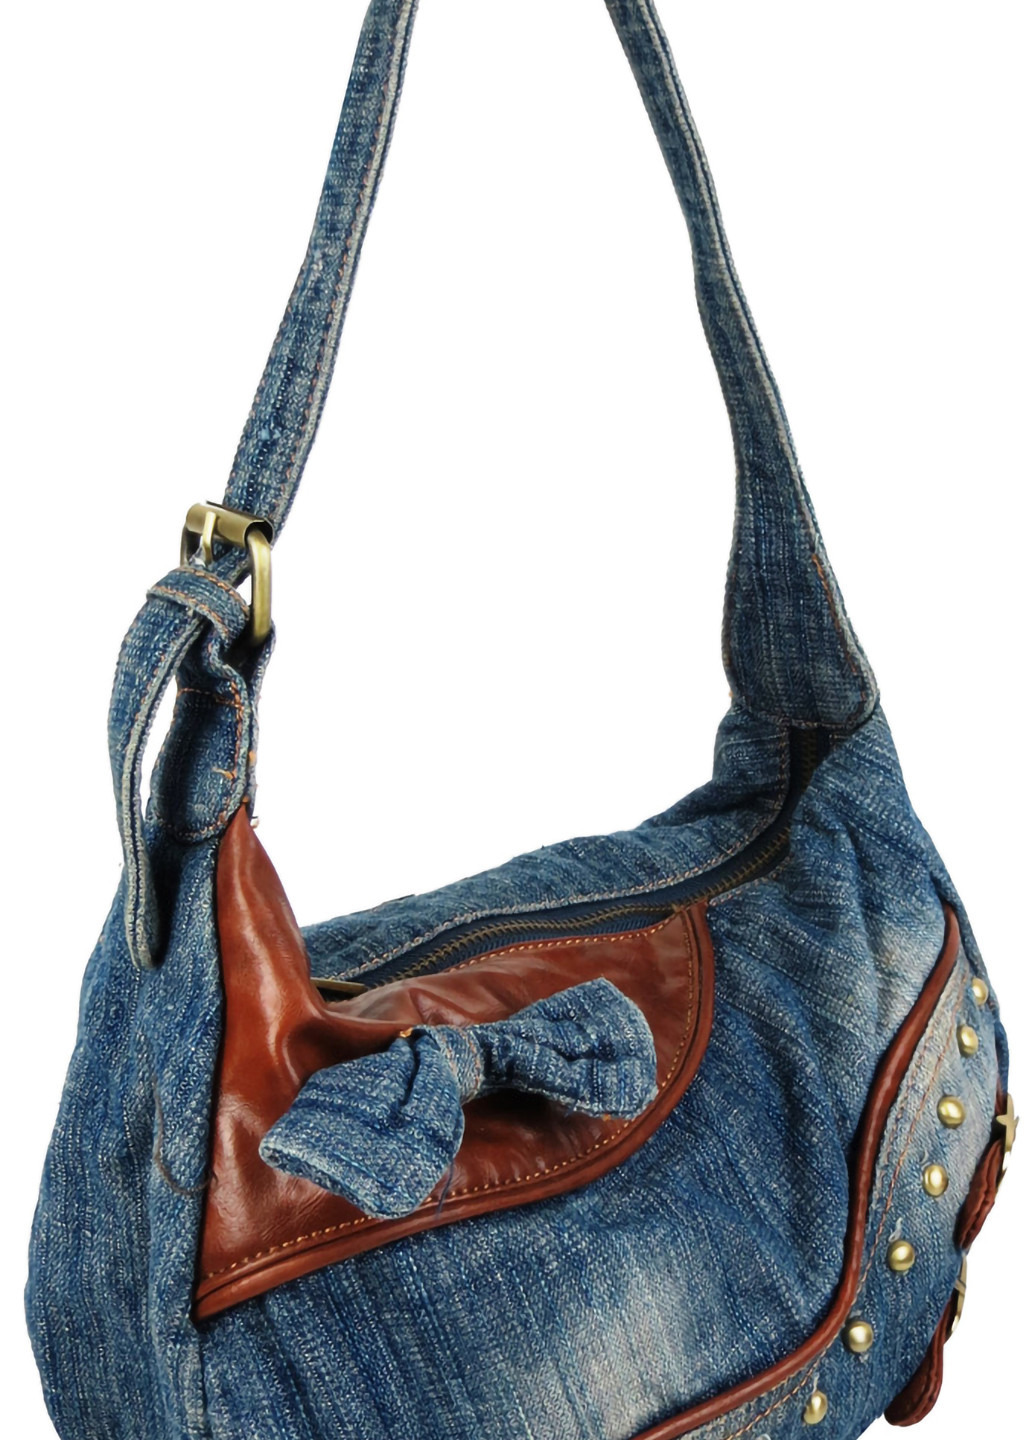 Жіноча сумка джинсова невеликого розміру 28х18х12 см FASHION JEANS (257062833)